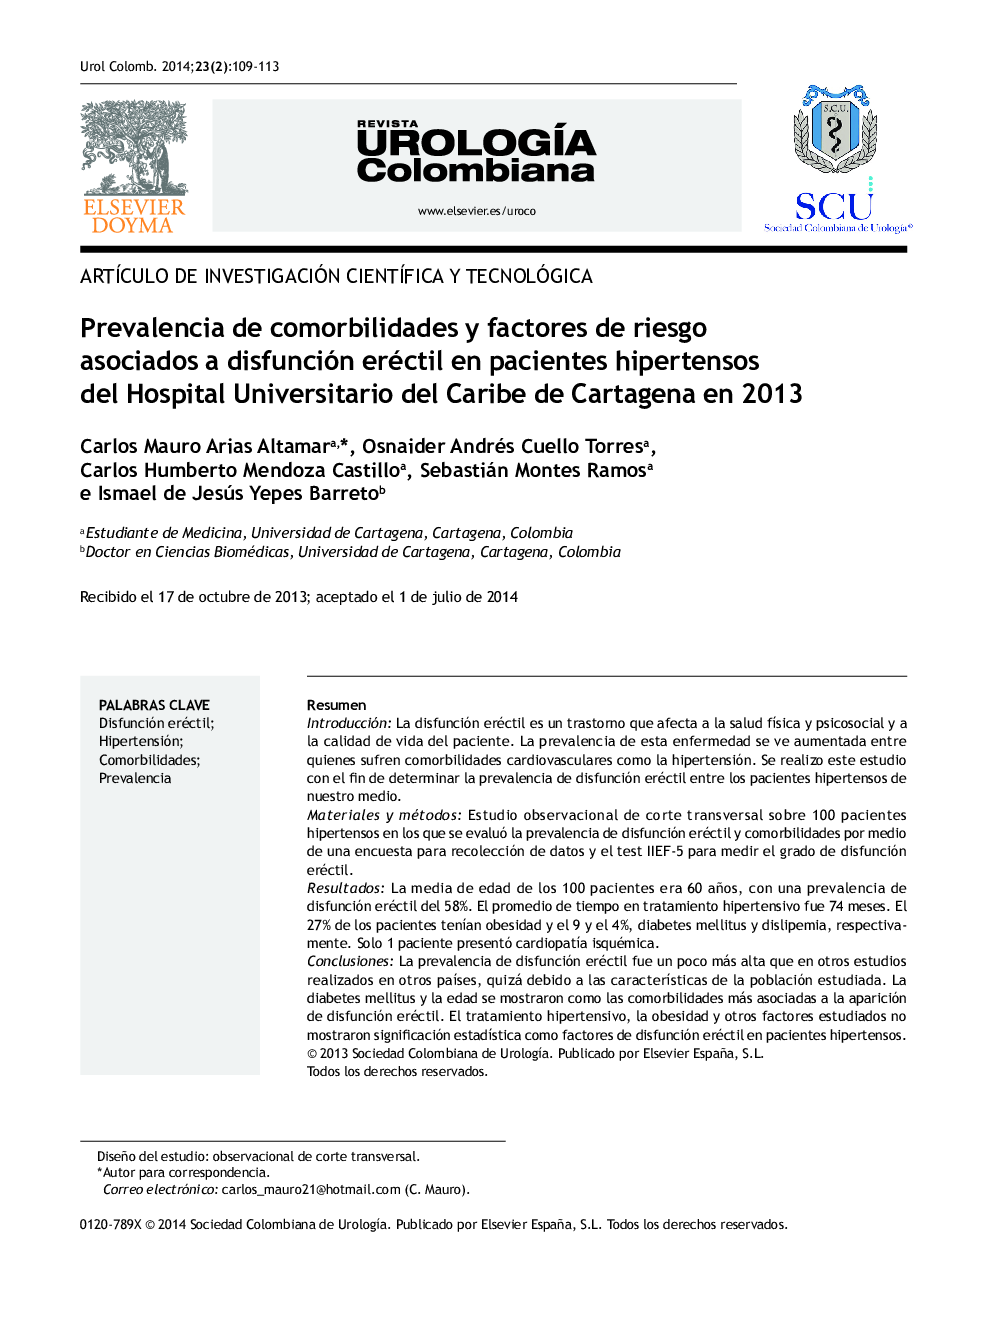 Prevalencia de comorbilidades y factores de riesgo asociados a disfunción eréctil en pacientes hipertensos del Hospital Universitario del Caribe de Cartagena en 2013